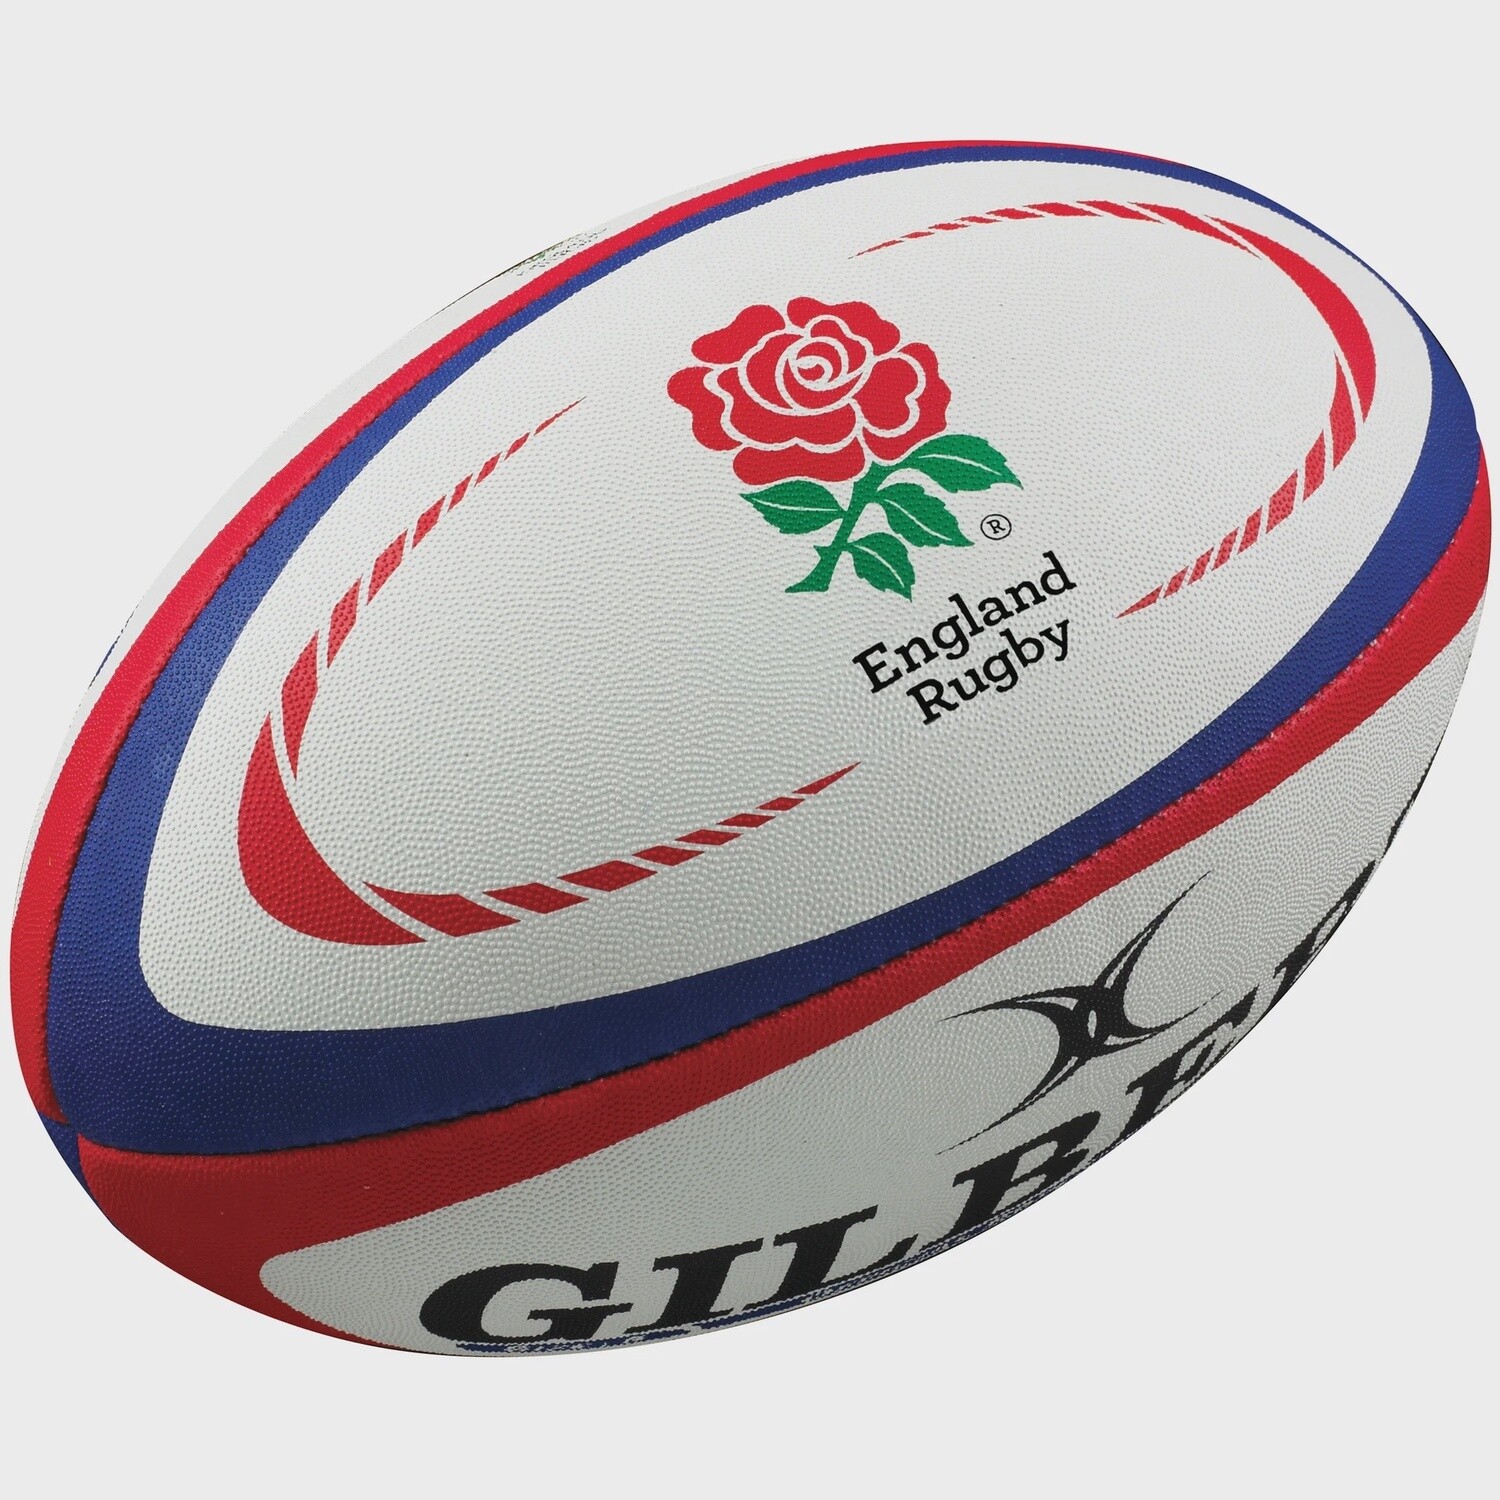 Gilbert Replica England Rugby Ball